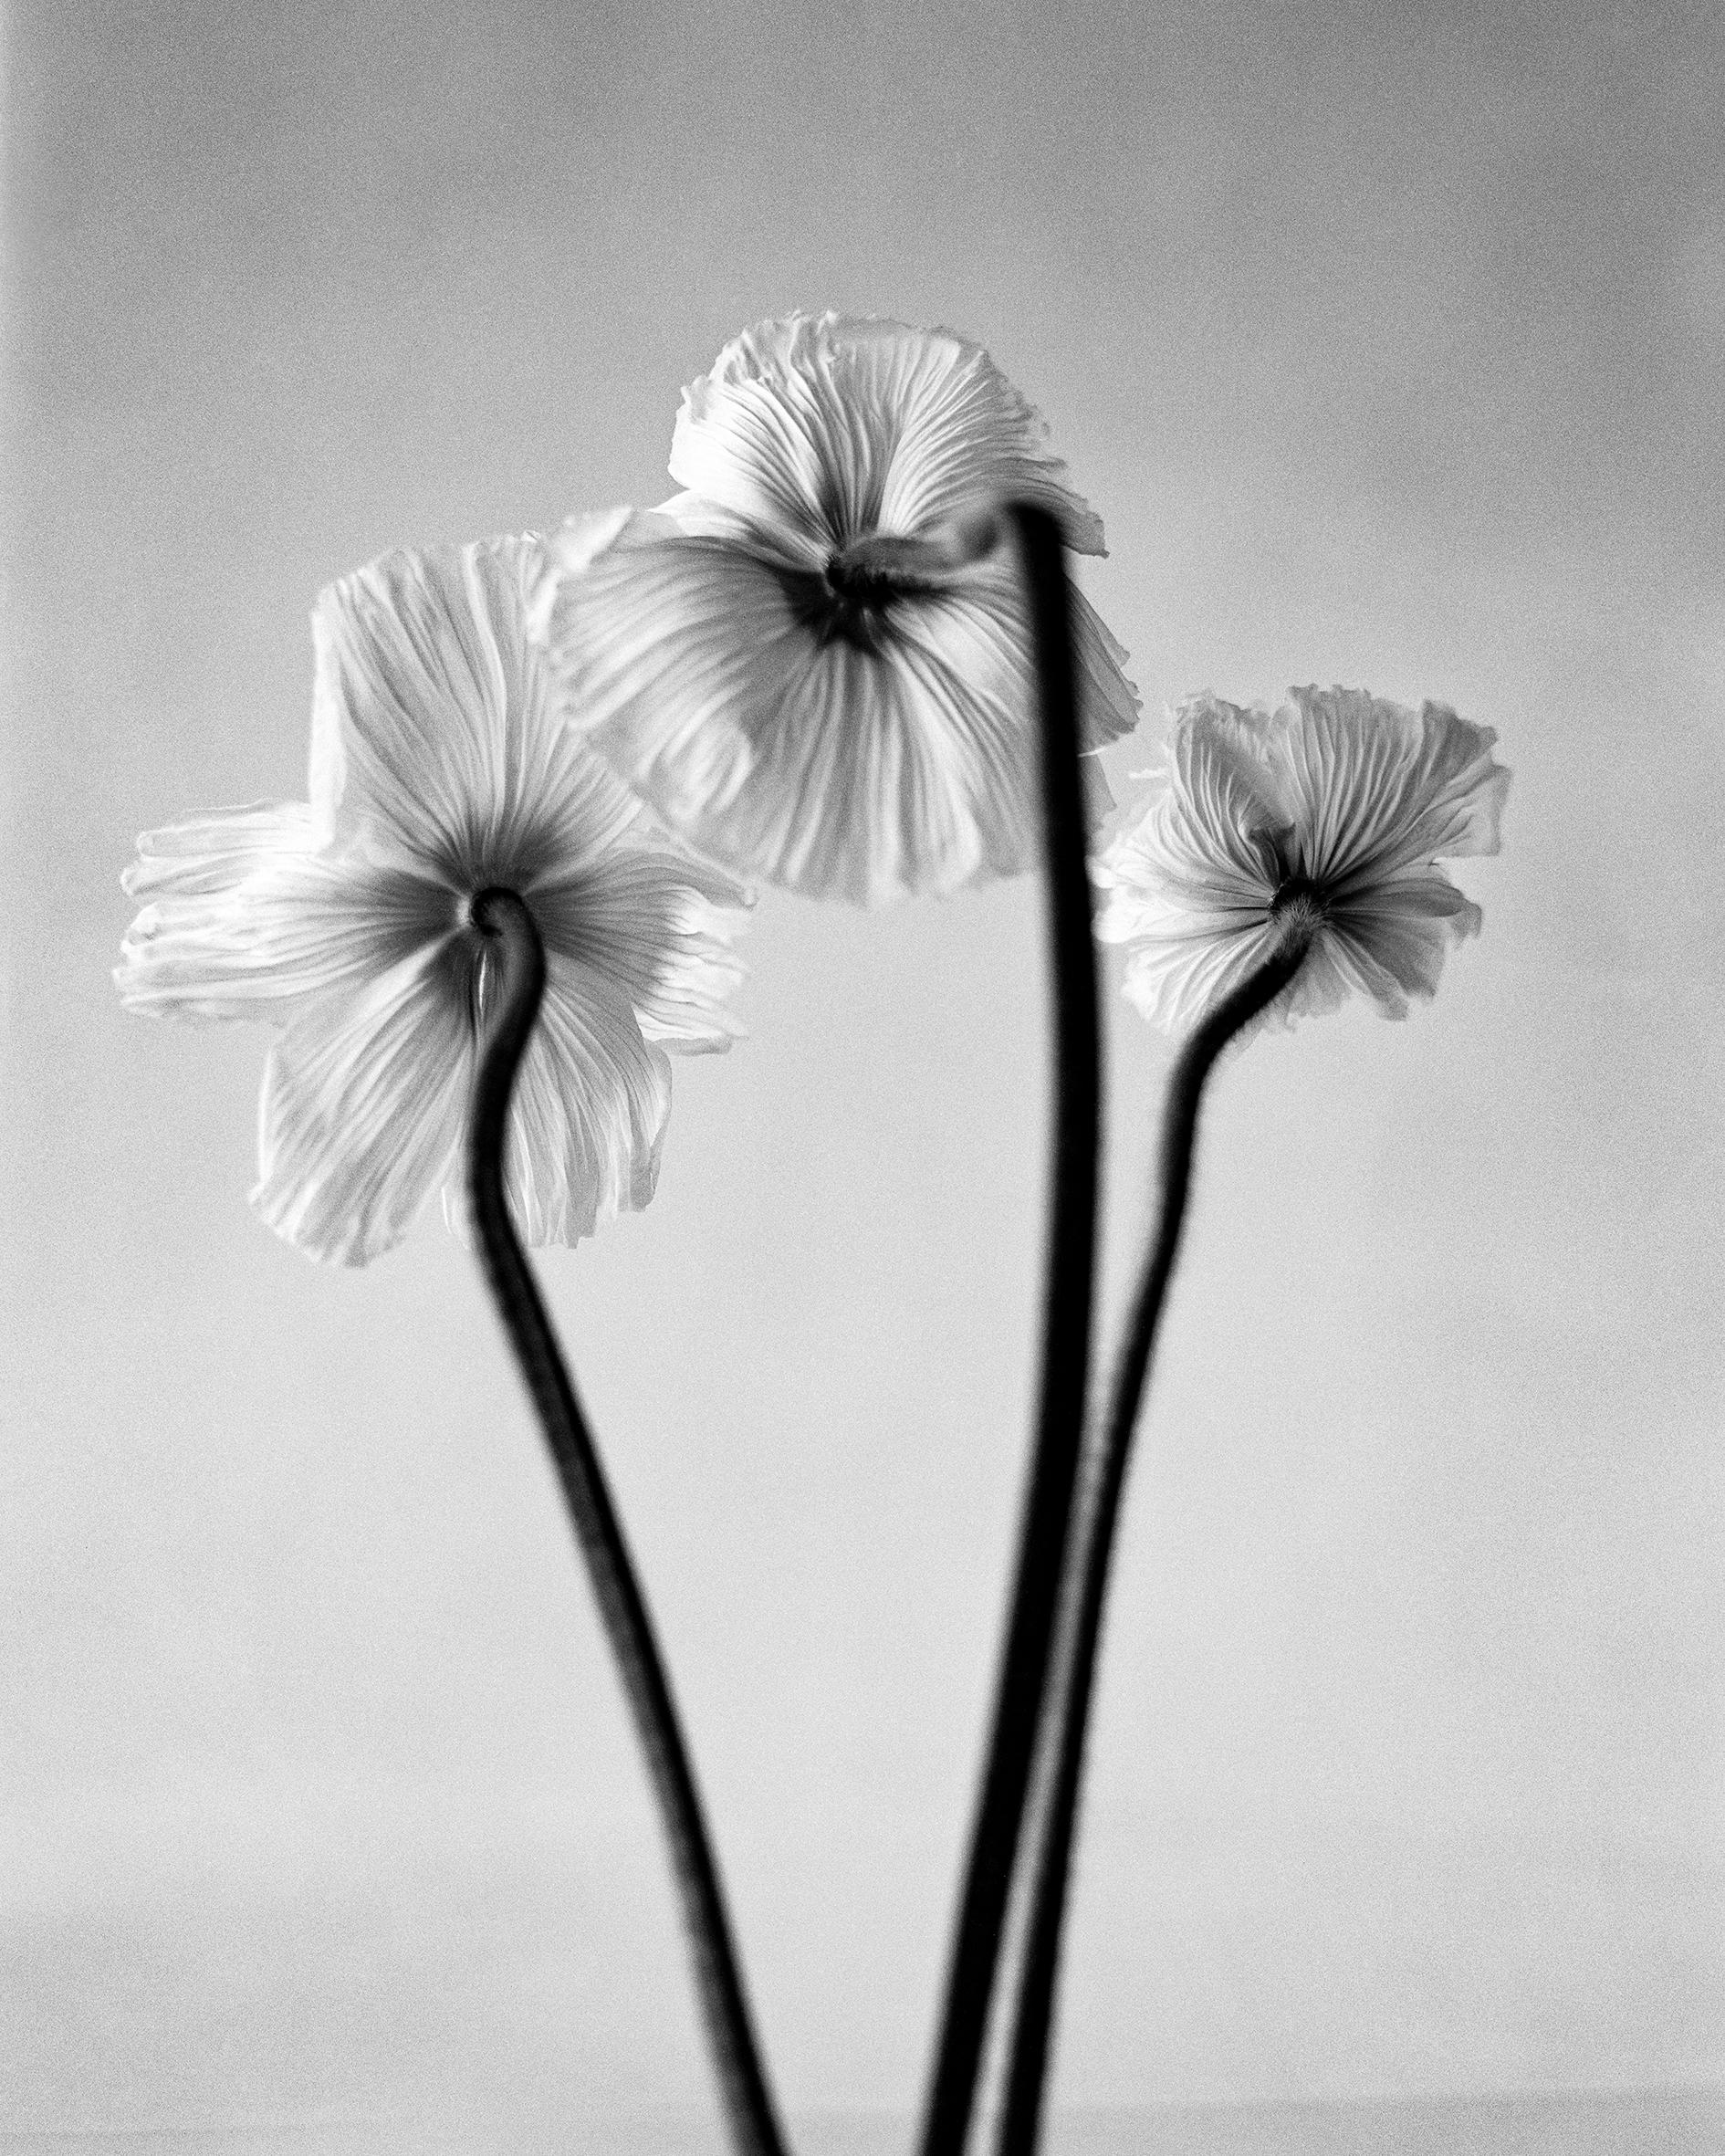 Ugne Pouwell Still-Life Photograph – Drei Mohnblumen – Schwarz-Weiß-Blumenfotografie in limitierter Auflage von 20 Stück